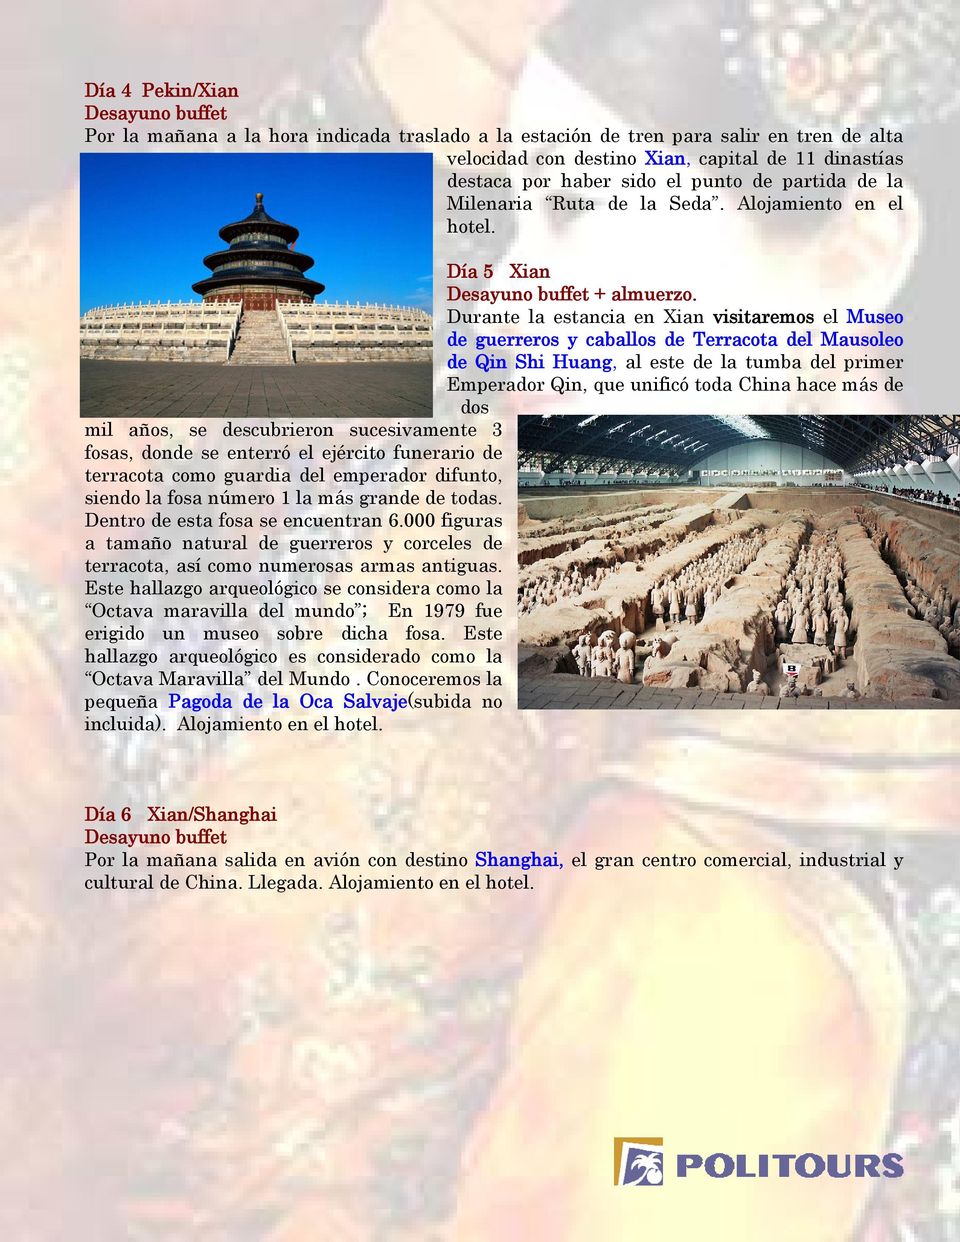 Durante la estancia en Xian visitaremos el Museo de guerreros y caballos de Terracota del Mausoleo de Qin Shi Huang, al este de la tumba del primer Emperador Qin, que unificó toda China hace más de